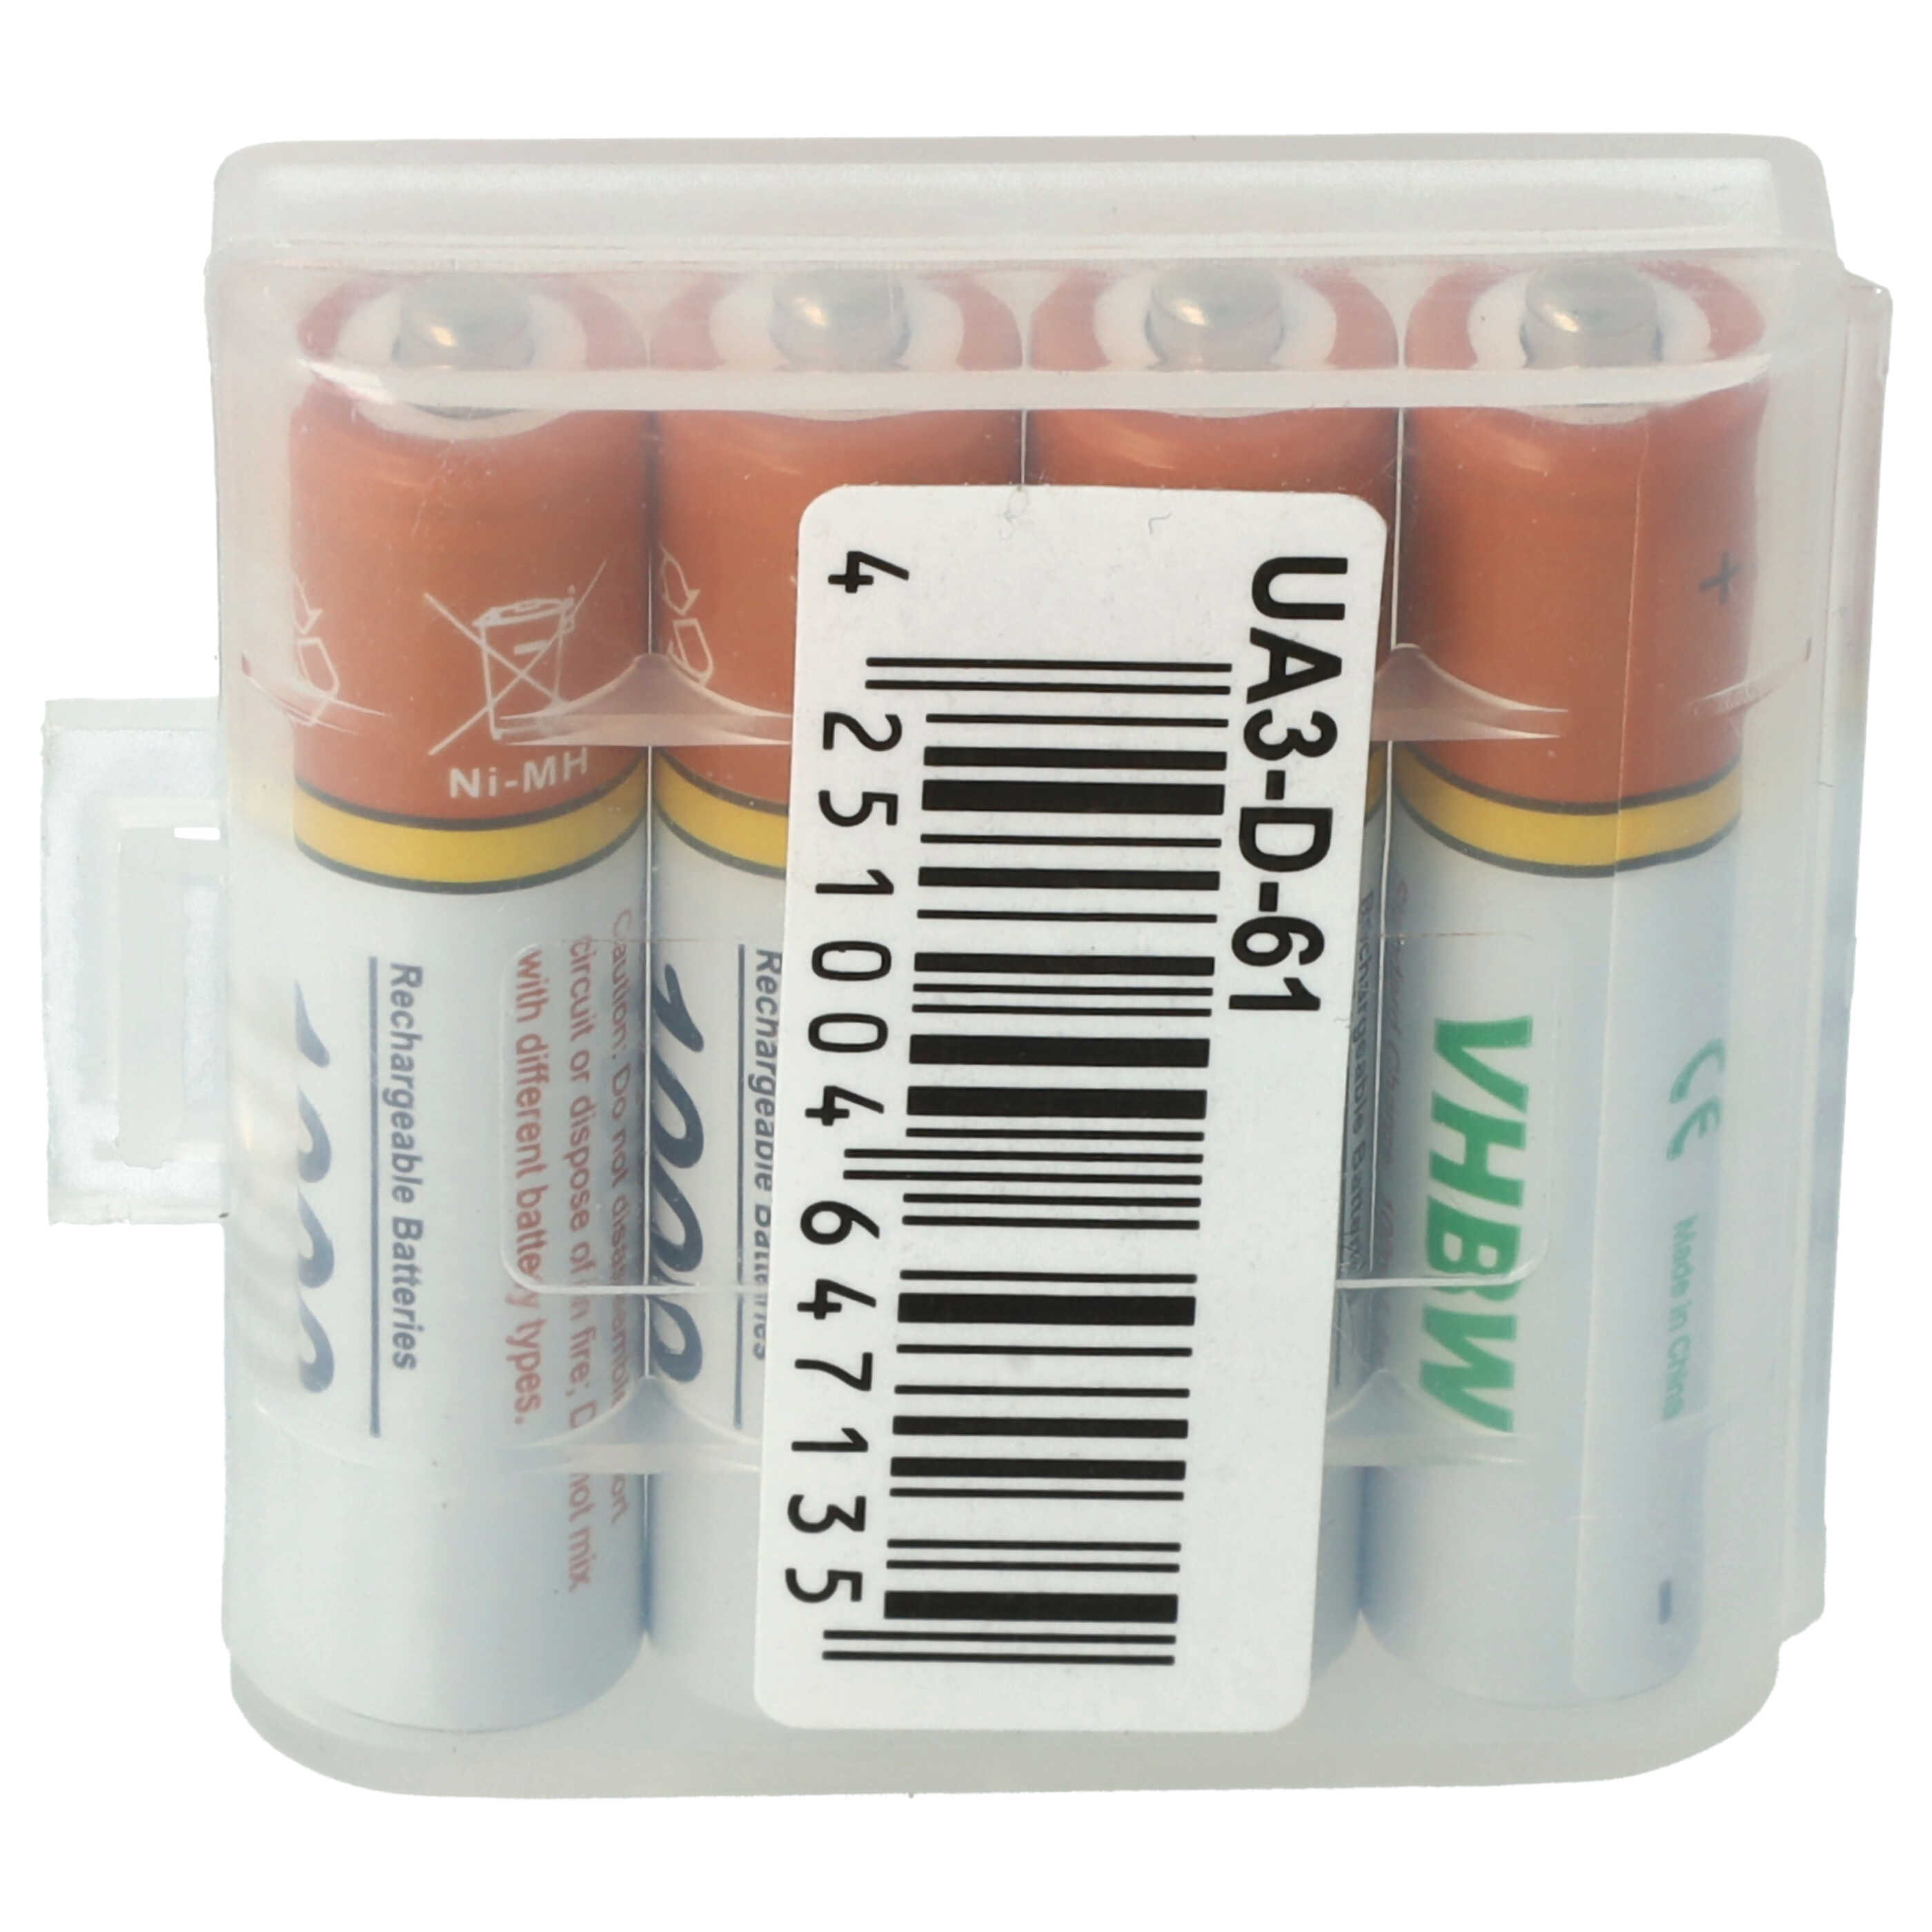 Landline Phone Battery (4 Units) for Philips D4501, D6351, M3351, M3451, M3451B/38 Linea Lux, M5651, M6651, M6